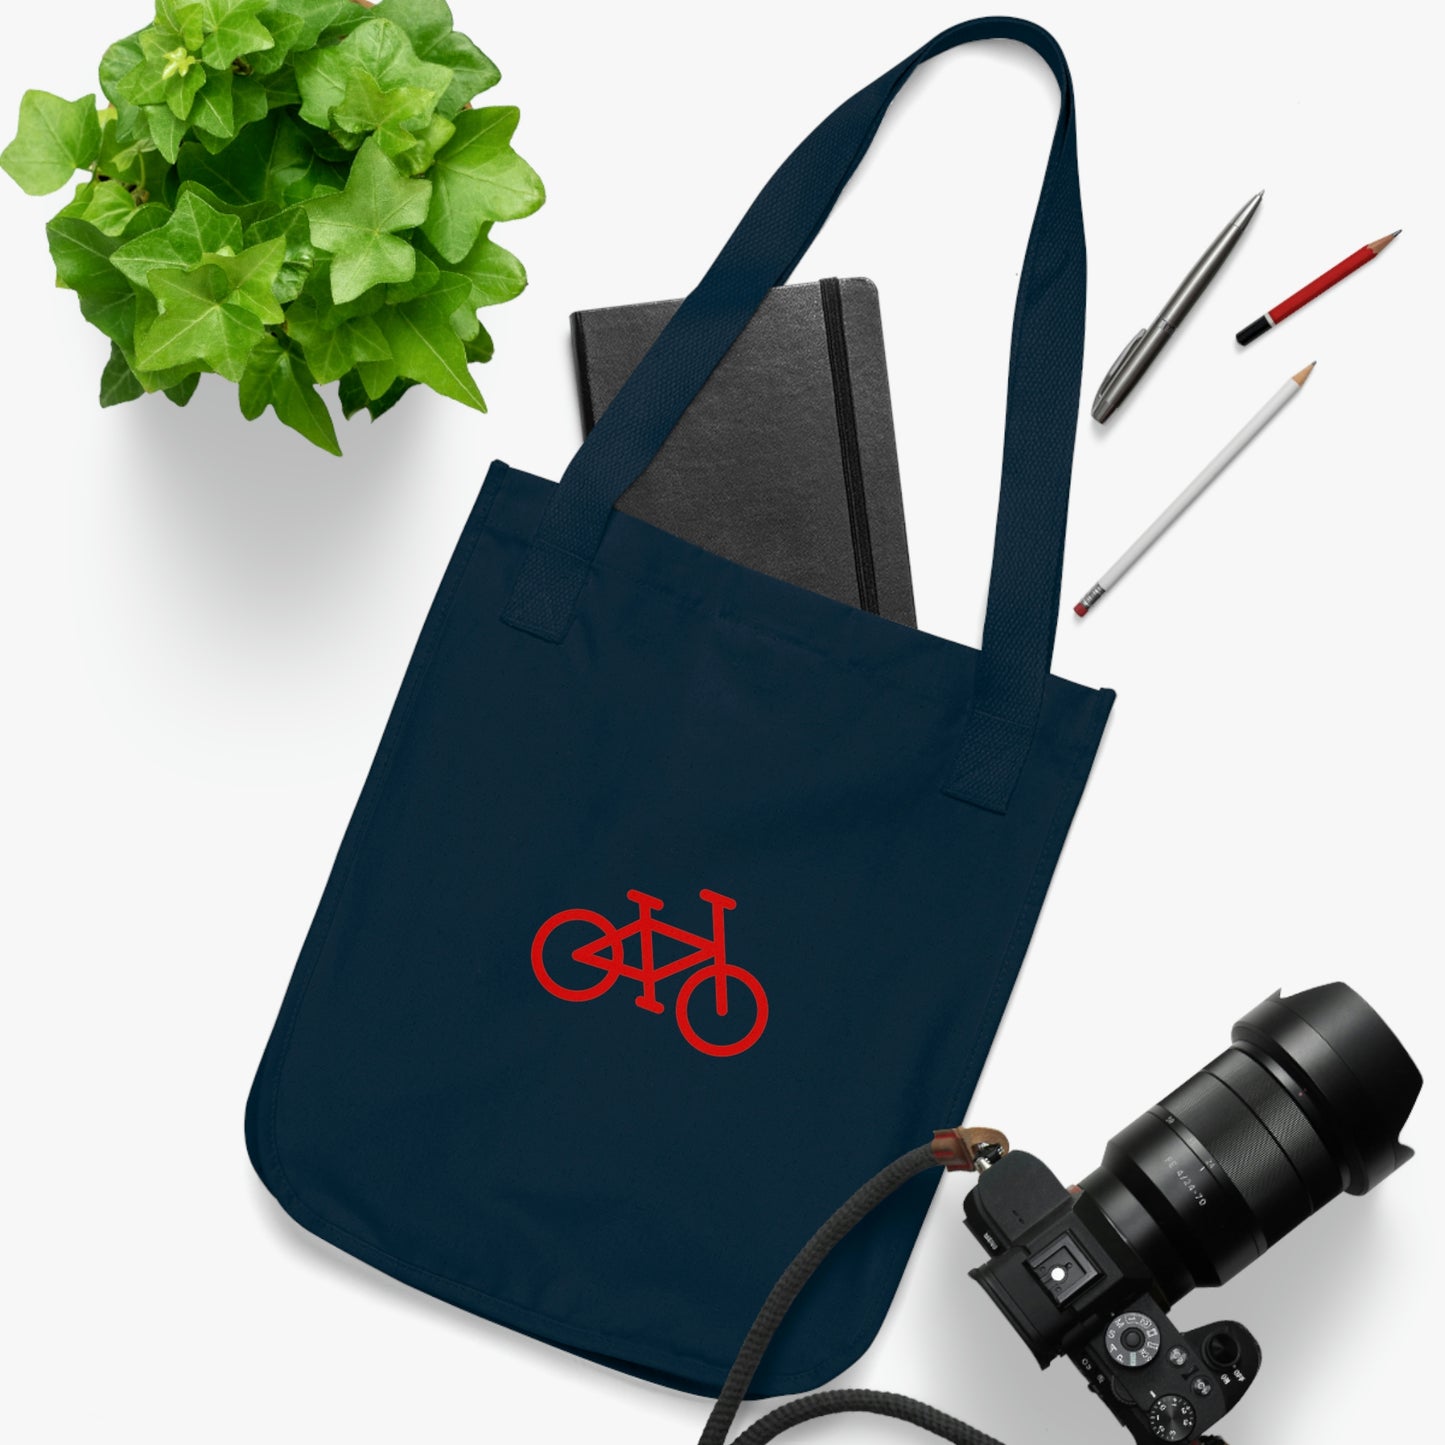 Organic Canvas Tote Bag - Bike